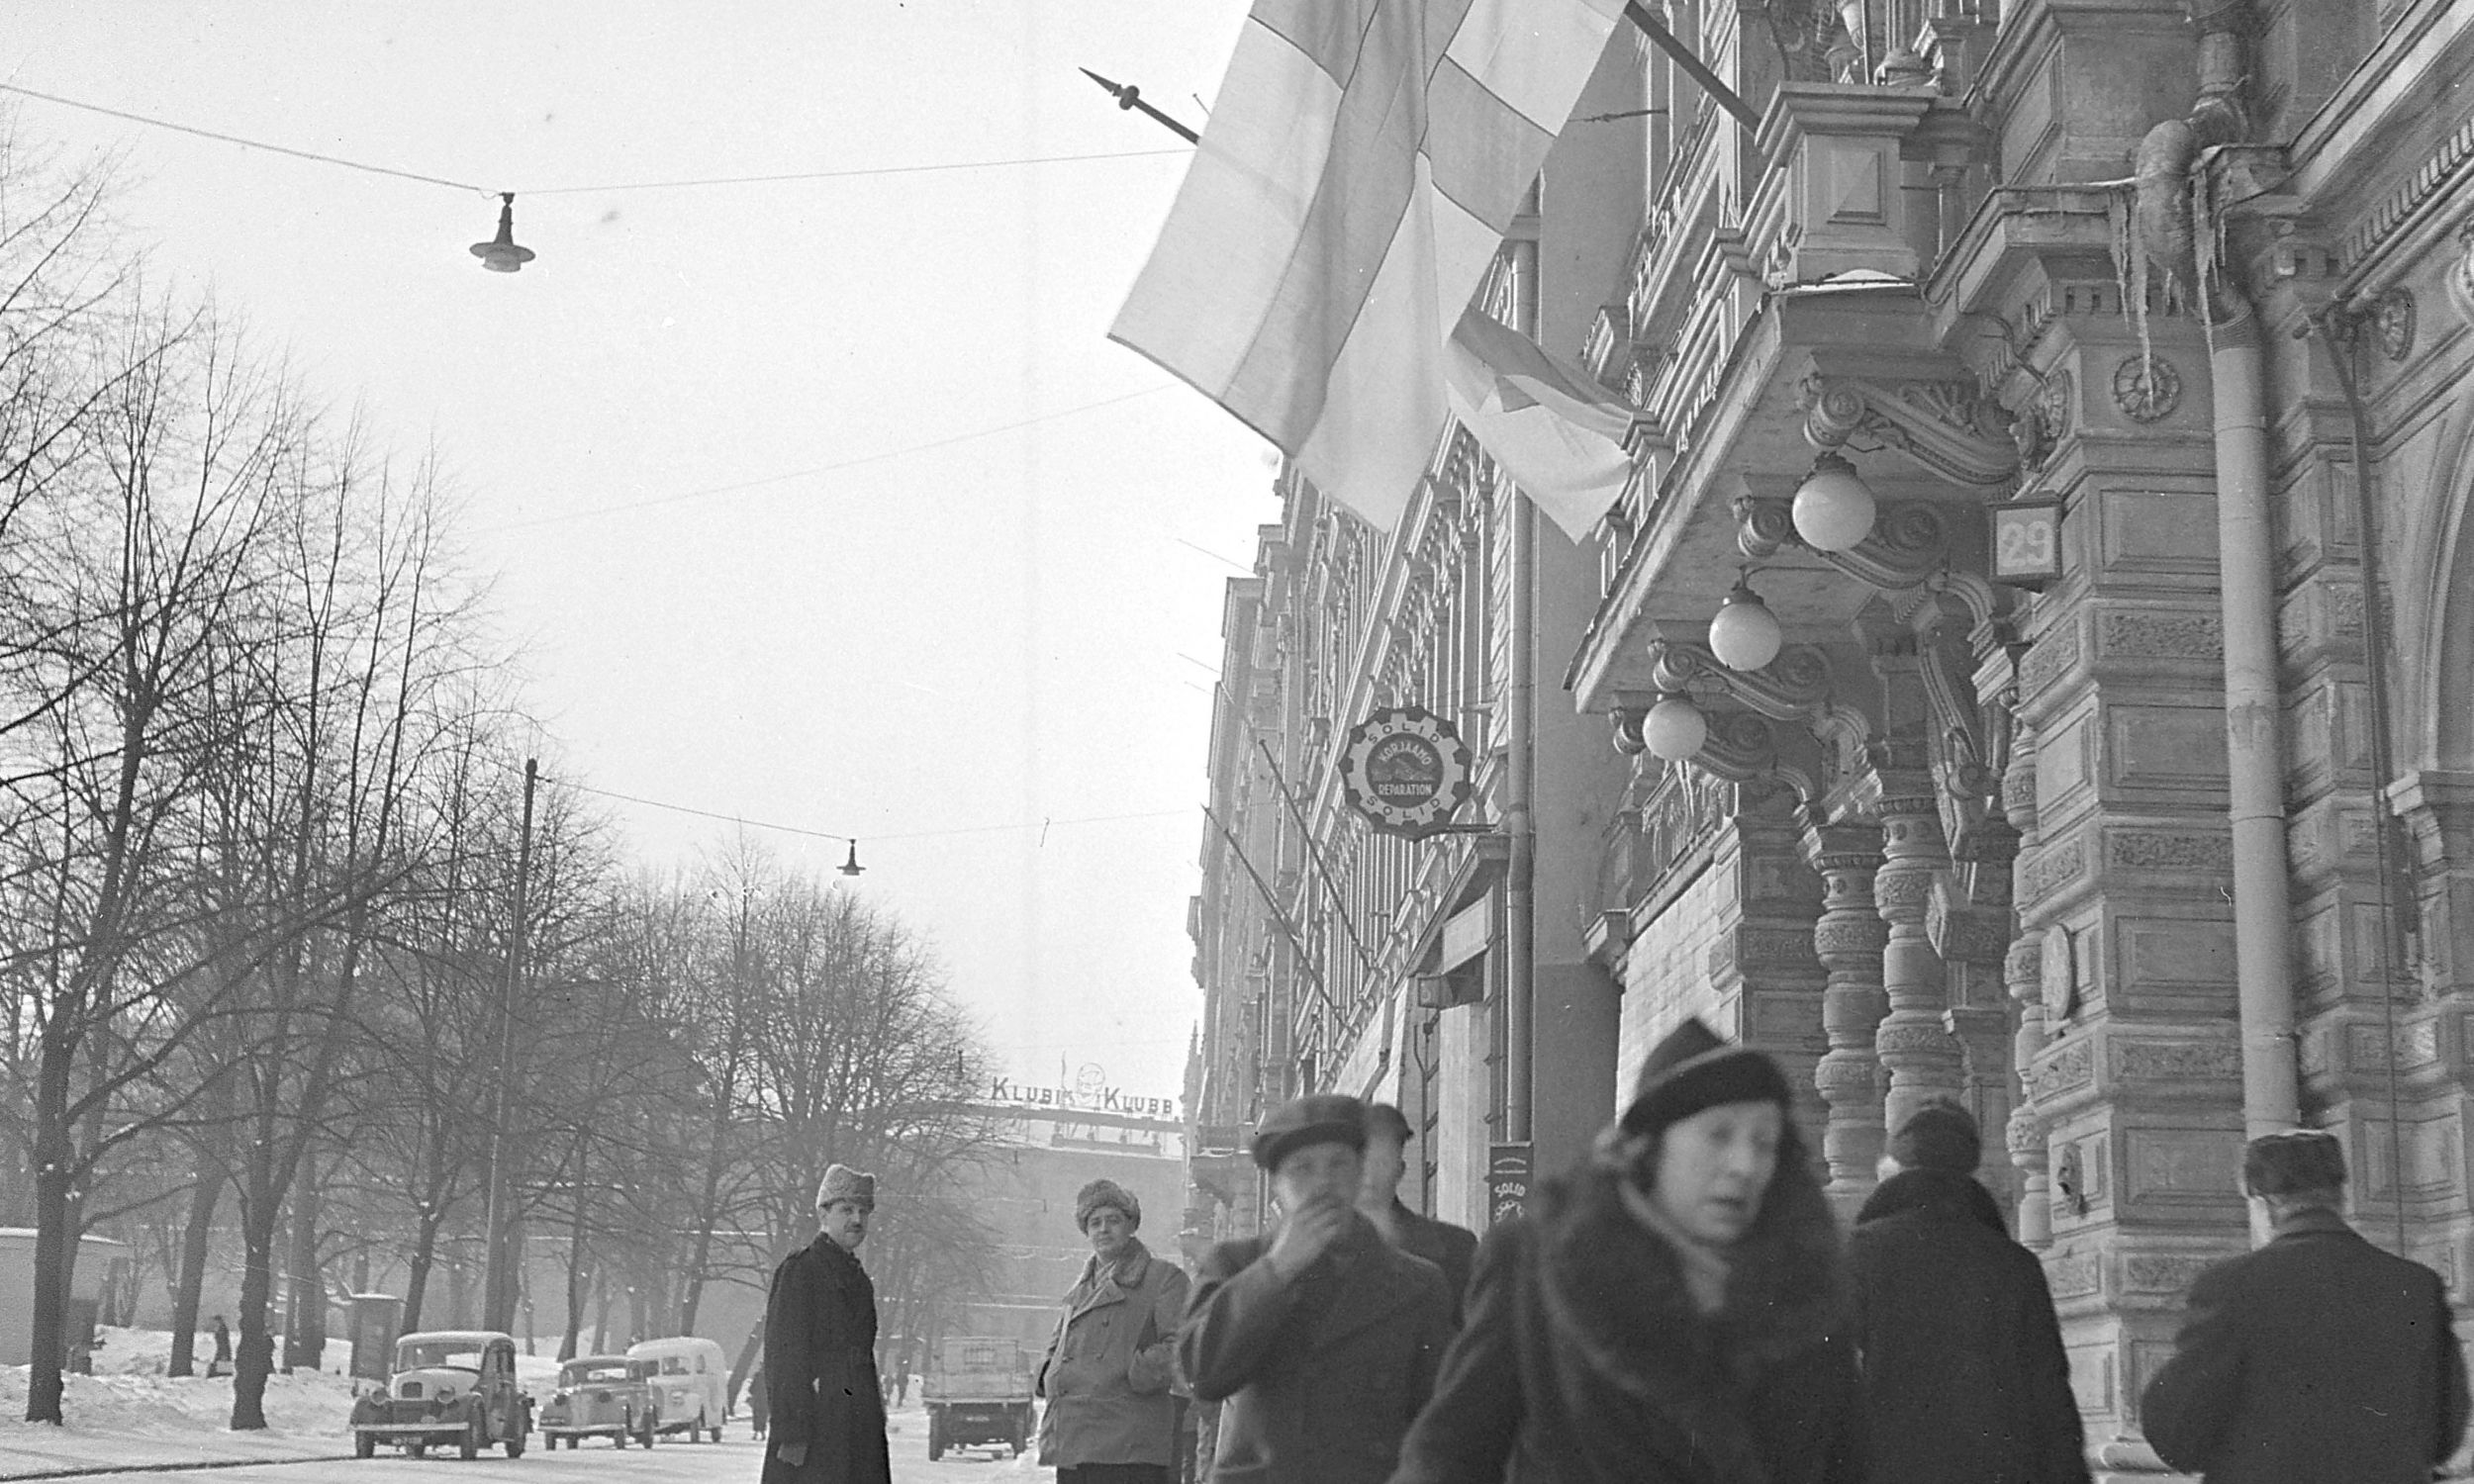 Flagi fińskie opuszczone do połowy masztu po ogłoszeniu warunków pokojowych. Helsinki, marzec 1940. Fot. Wikimedia Commons/https://www.finna.fi/Record/sa-kuva.sa-kuva-107696, Finnish Wartime Photograph Archive (SA-Kuva), Domena publiczna